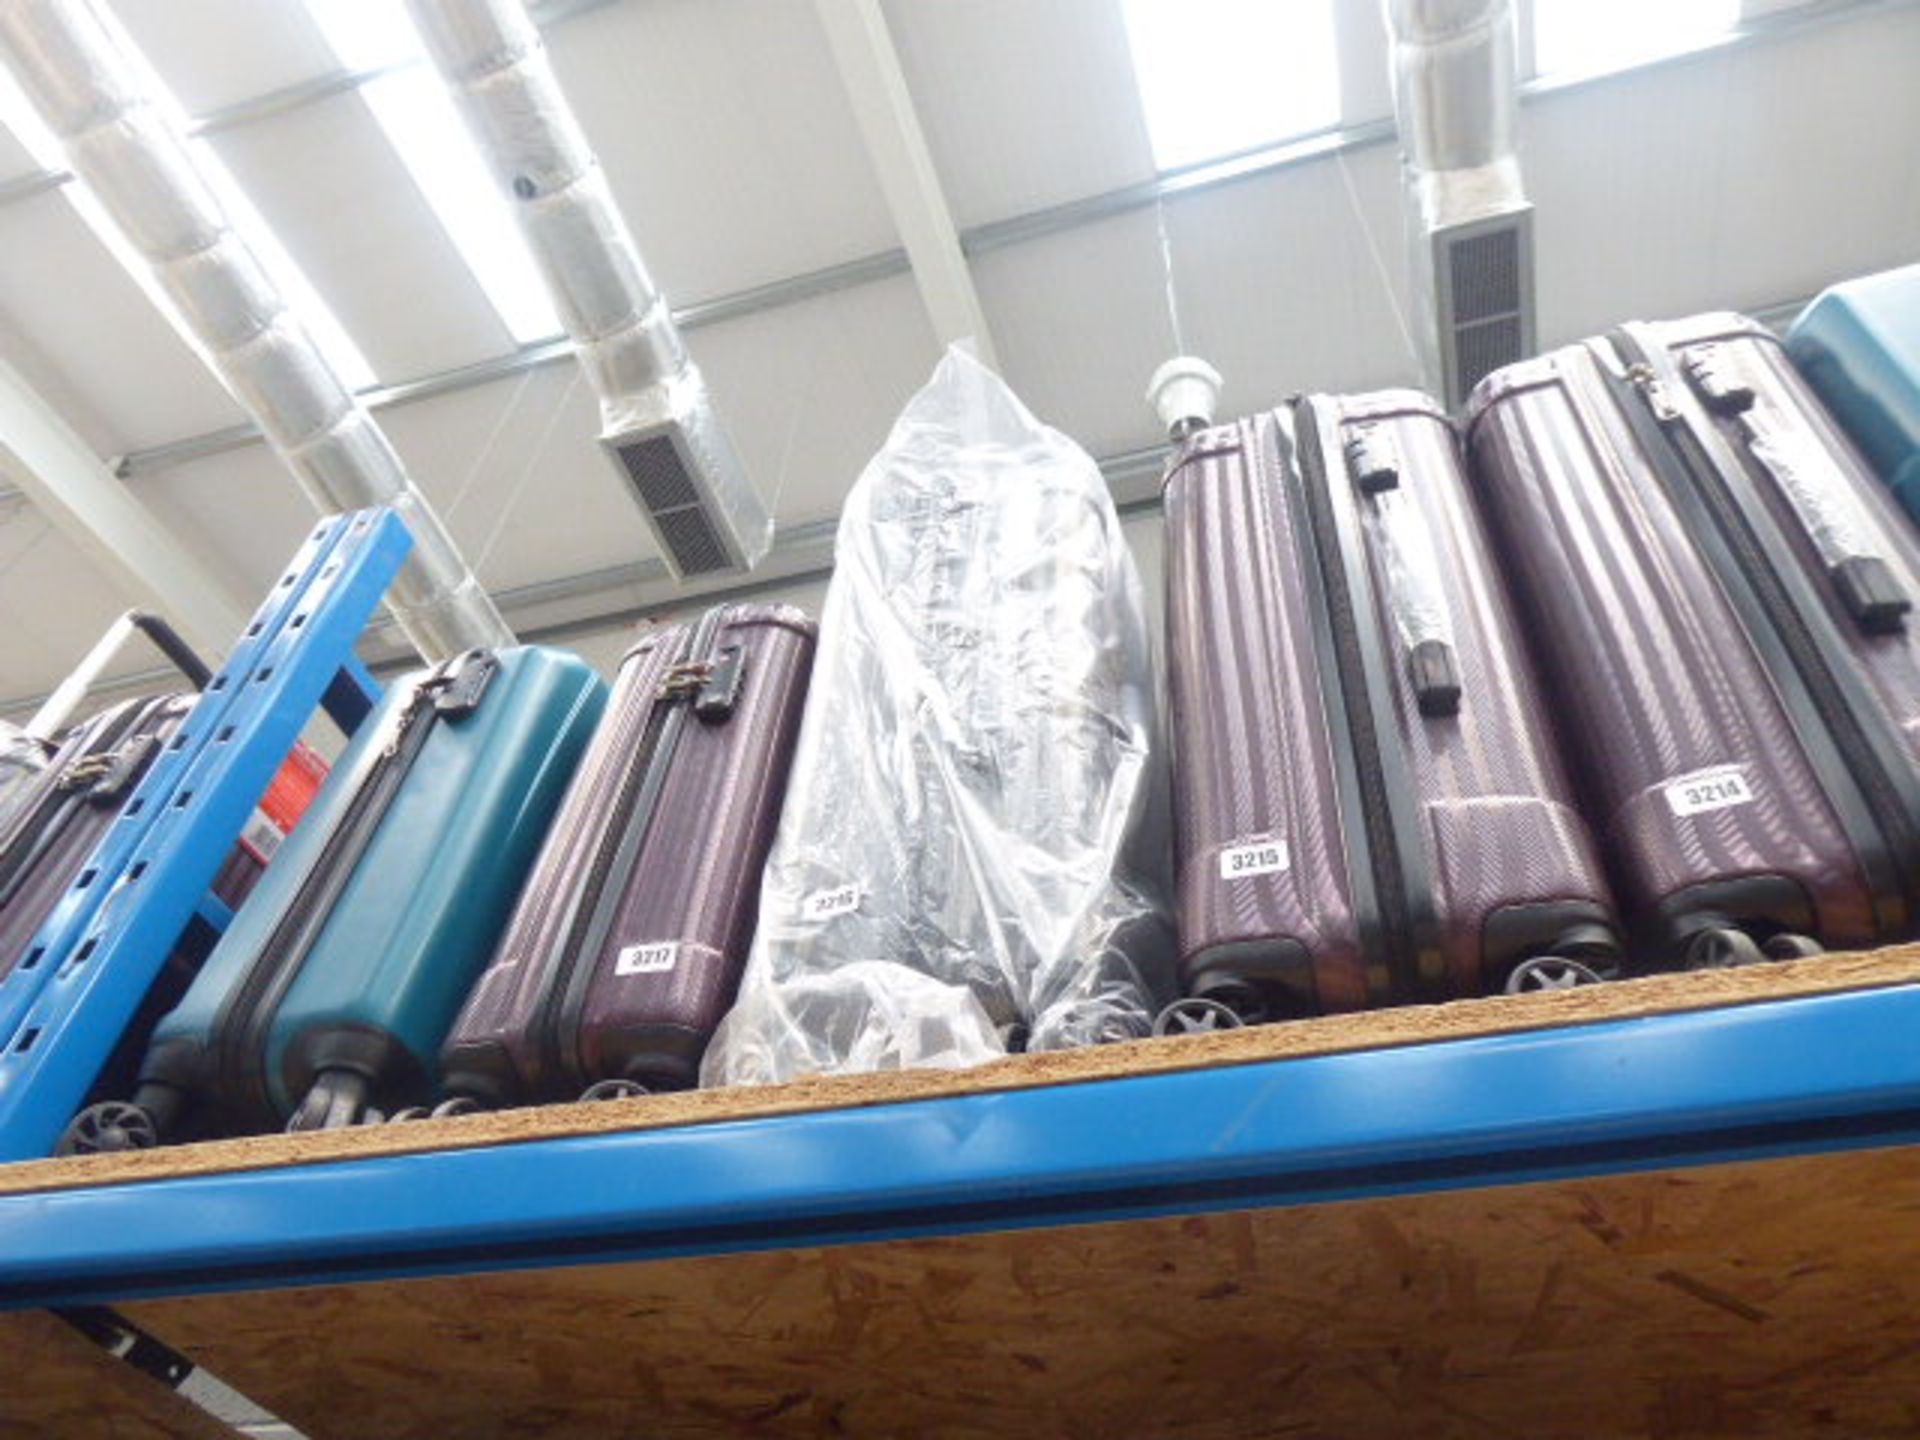 Medium size grey hard shell suitcase